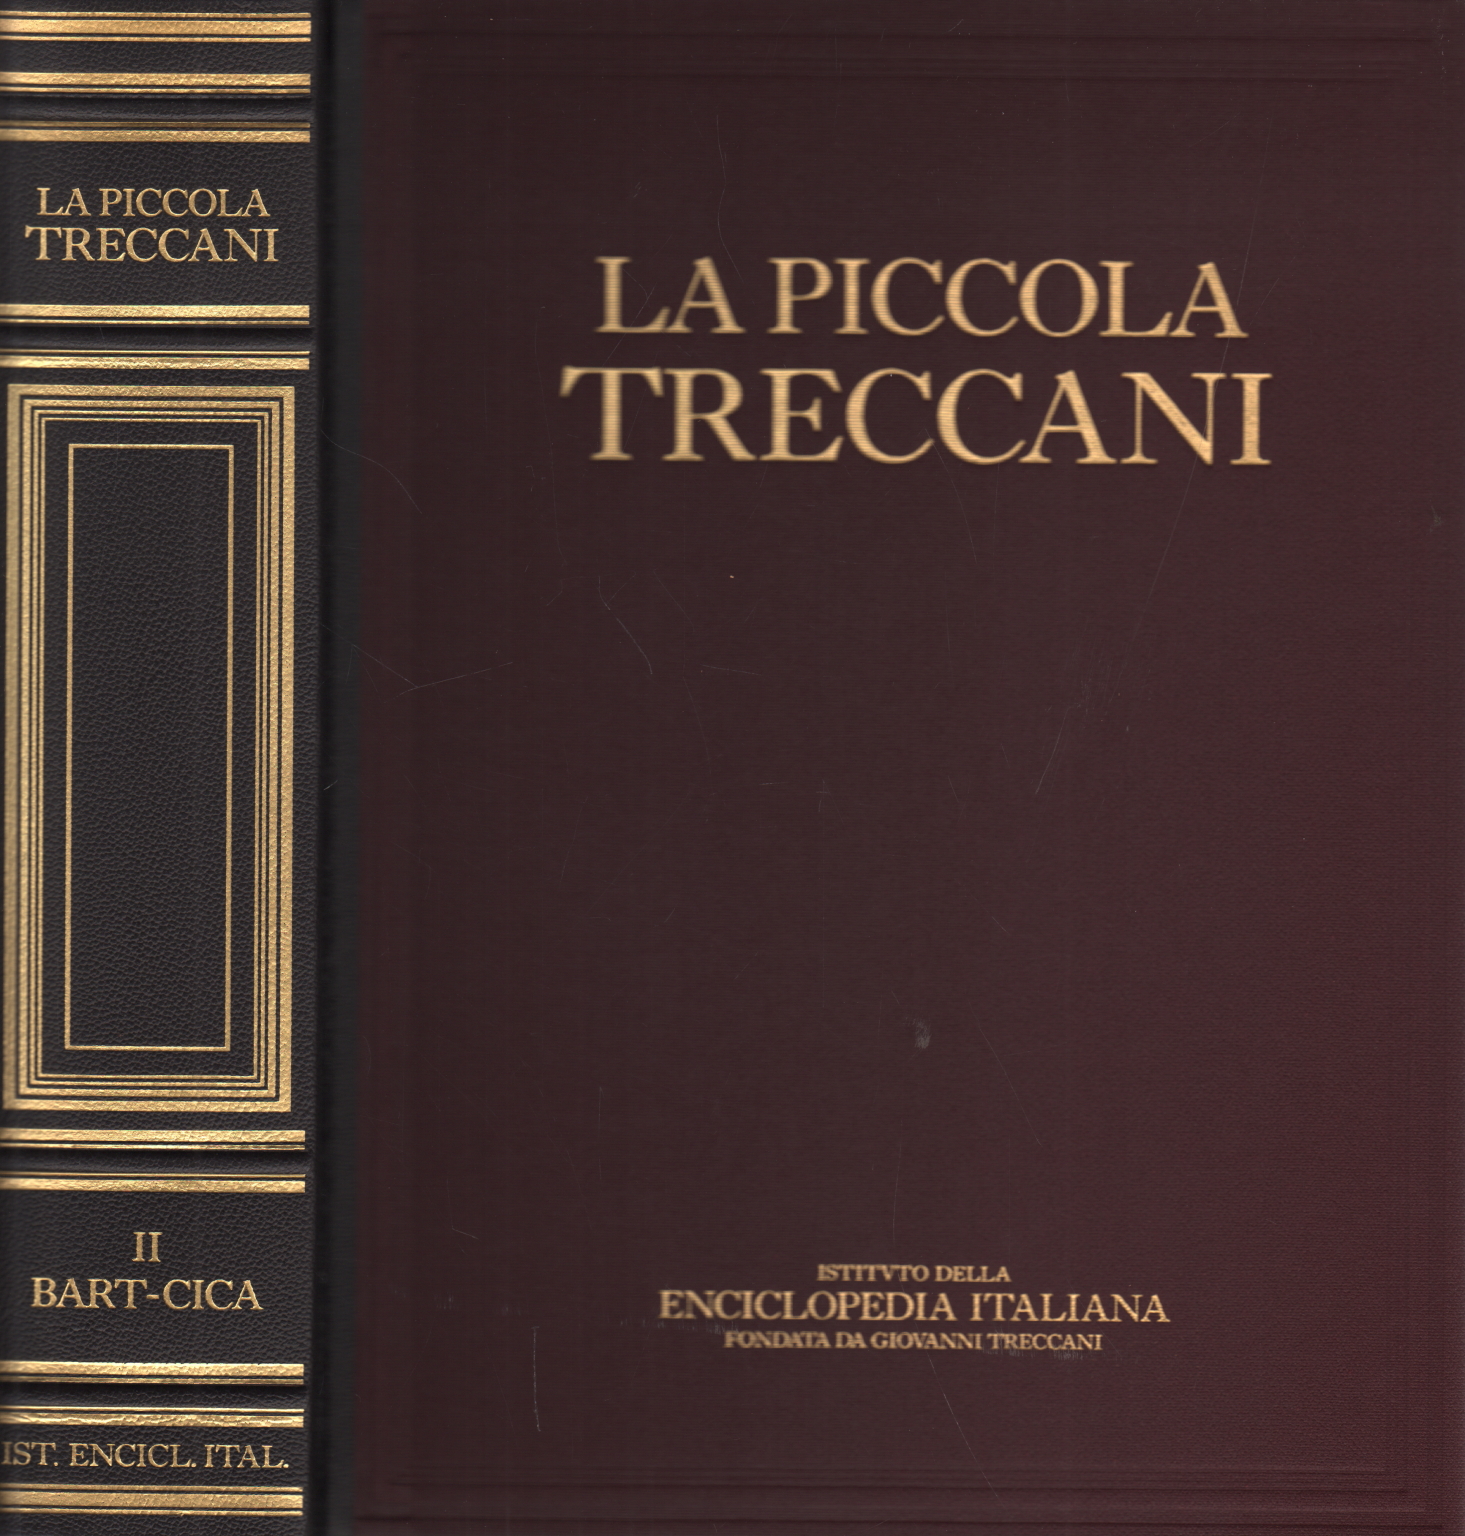 The Little Treccani II Bart-Cica